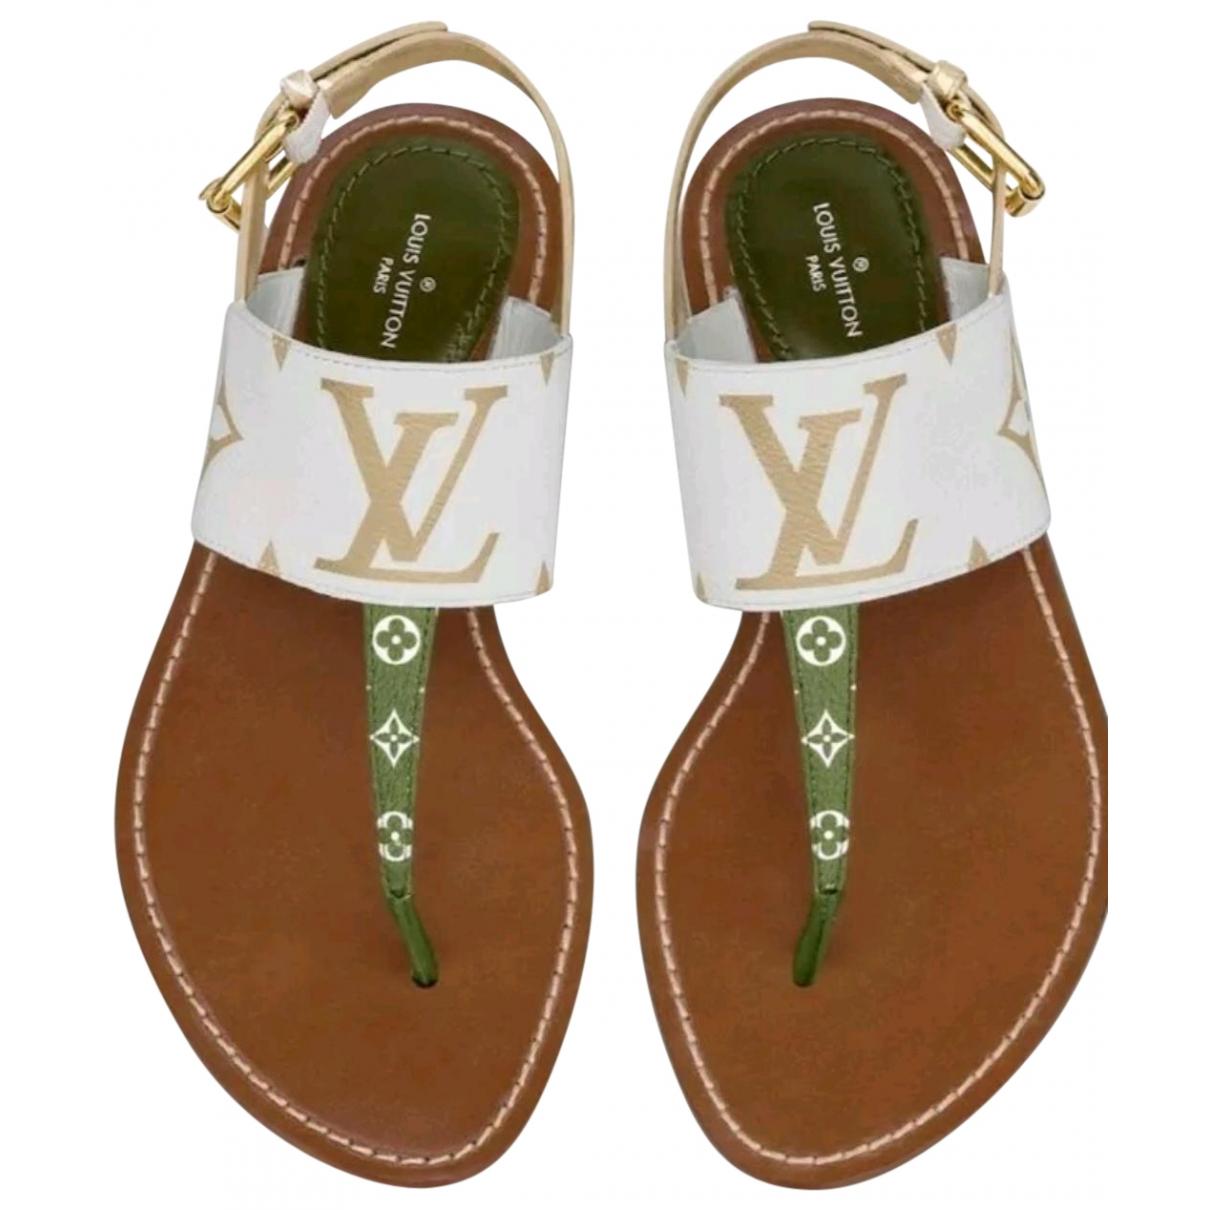 Cloth sandals Louis Vuitton Brown size 40 EU in Cloth - 34070371